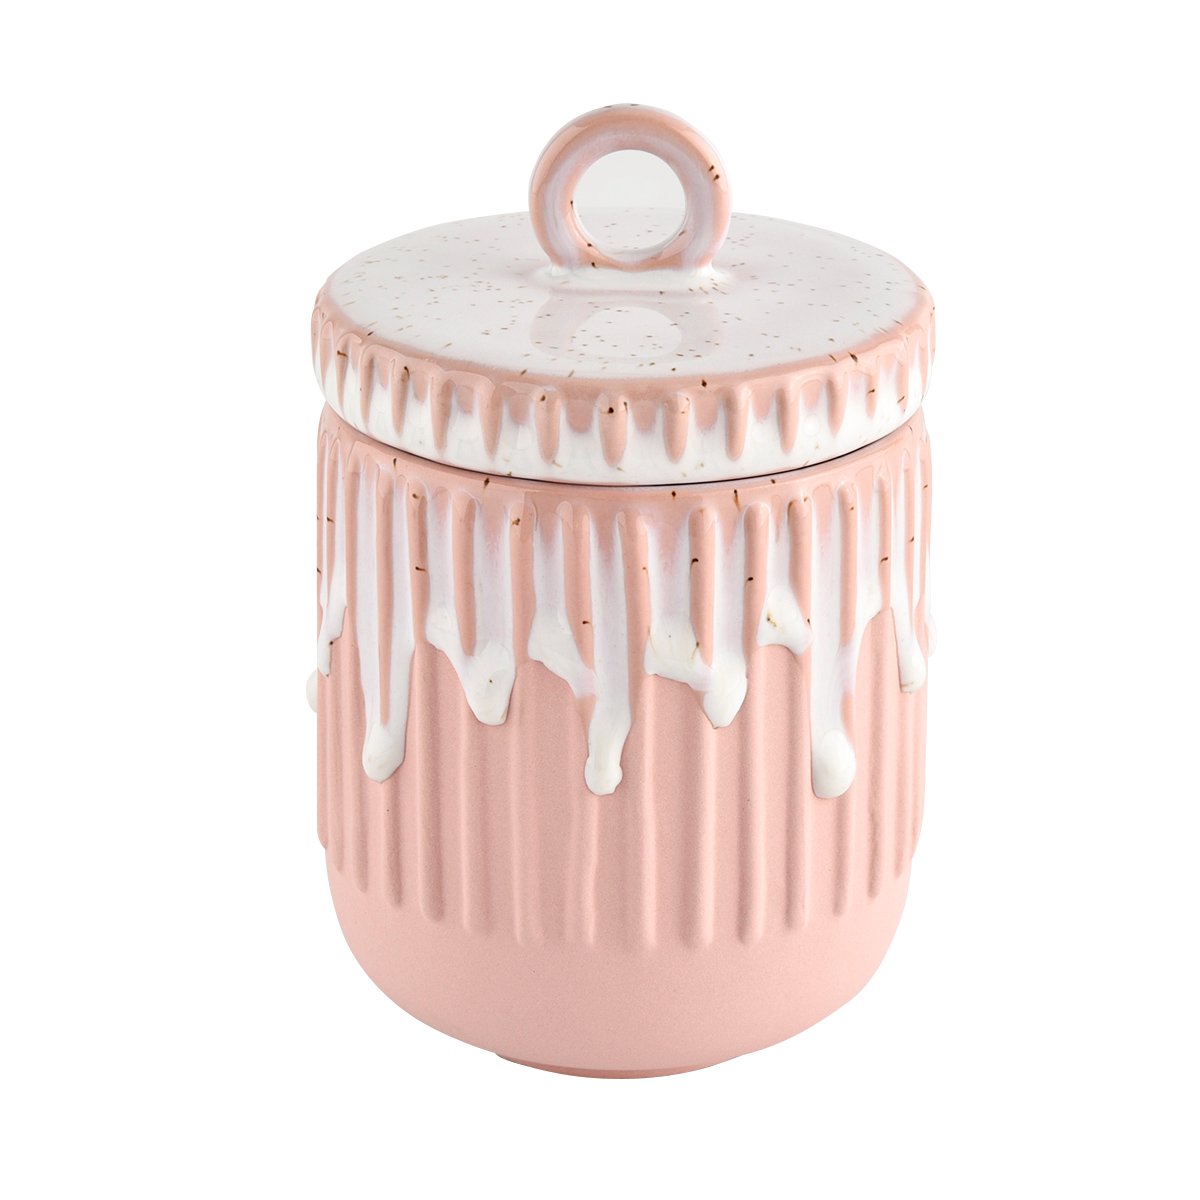 14oz ceramic candle holder pink frosting ceramic jars wholesale